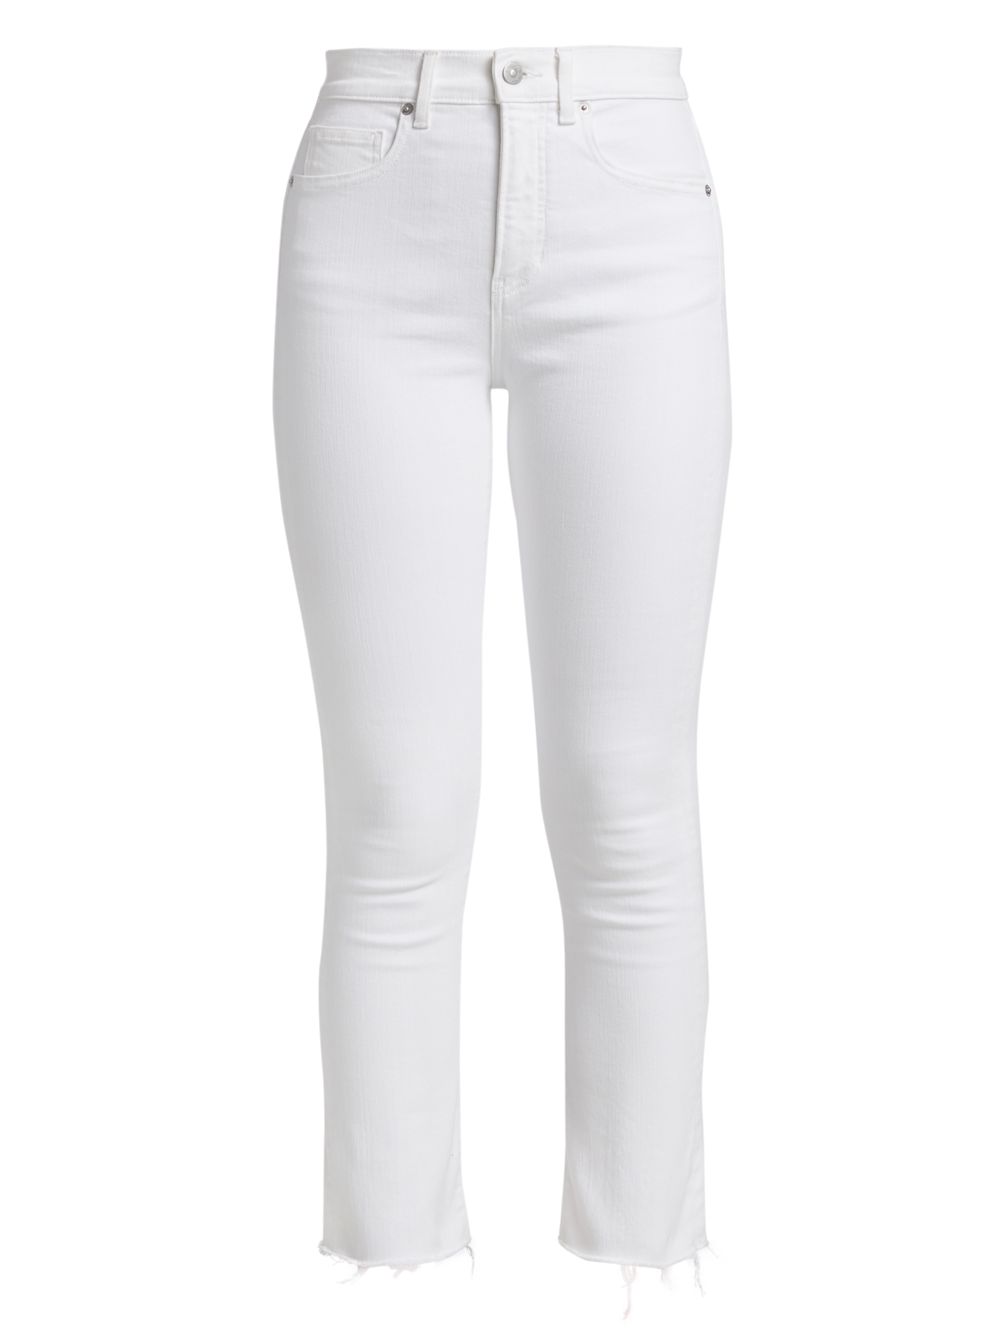 Укороченные расклешенные джинсы Carly Kick Veronica Beard, белый расклешенные джинсы carly со средней посадкой veronica beard цвет sierra blue